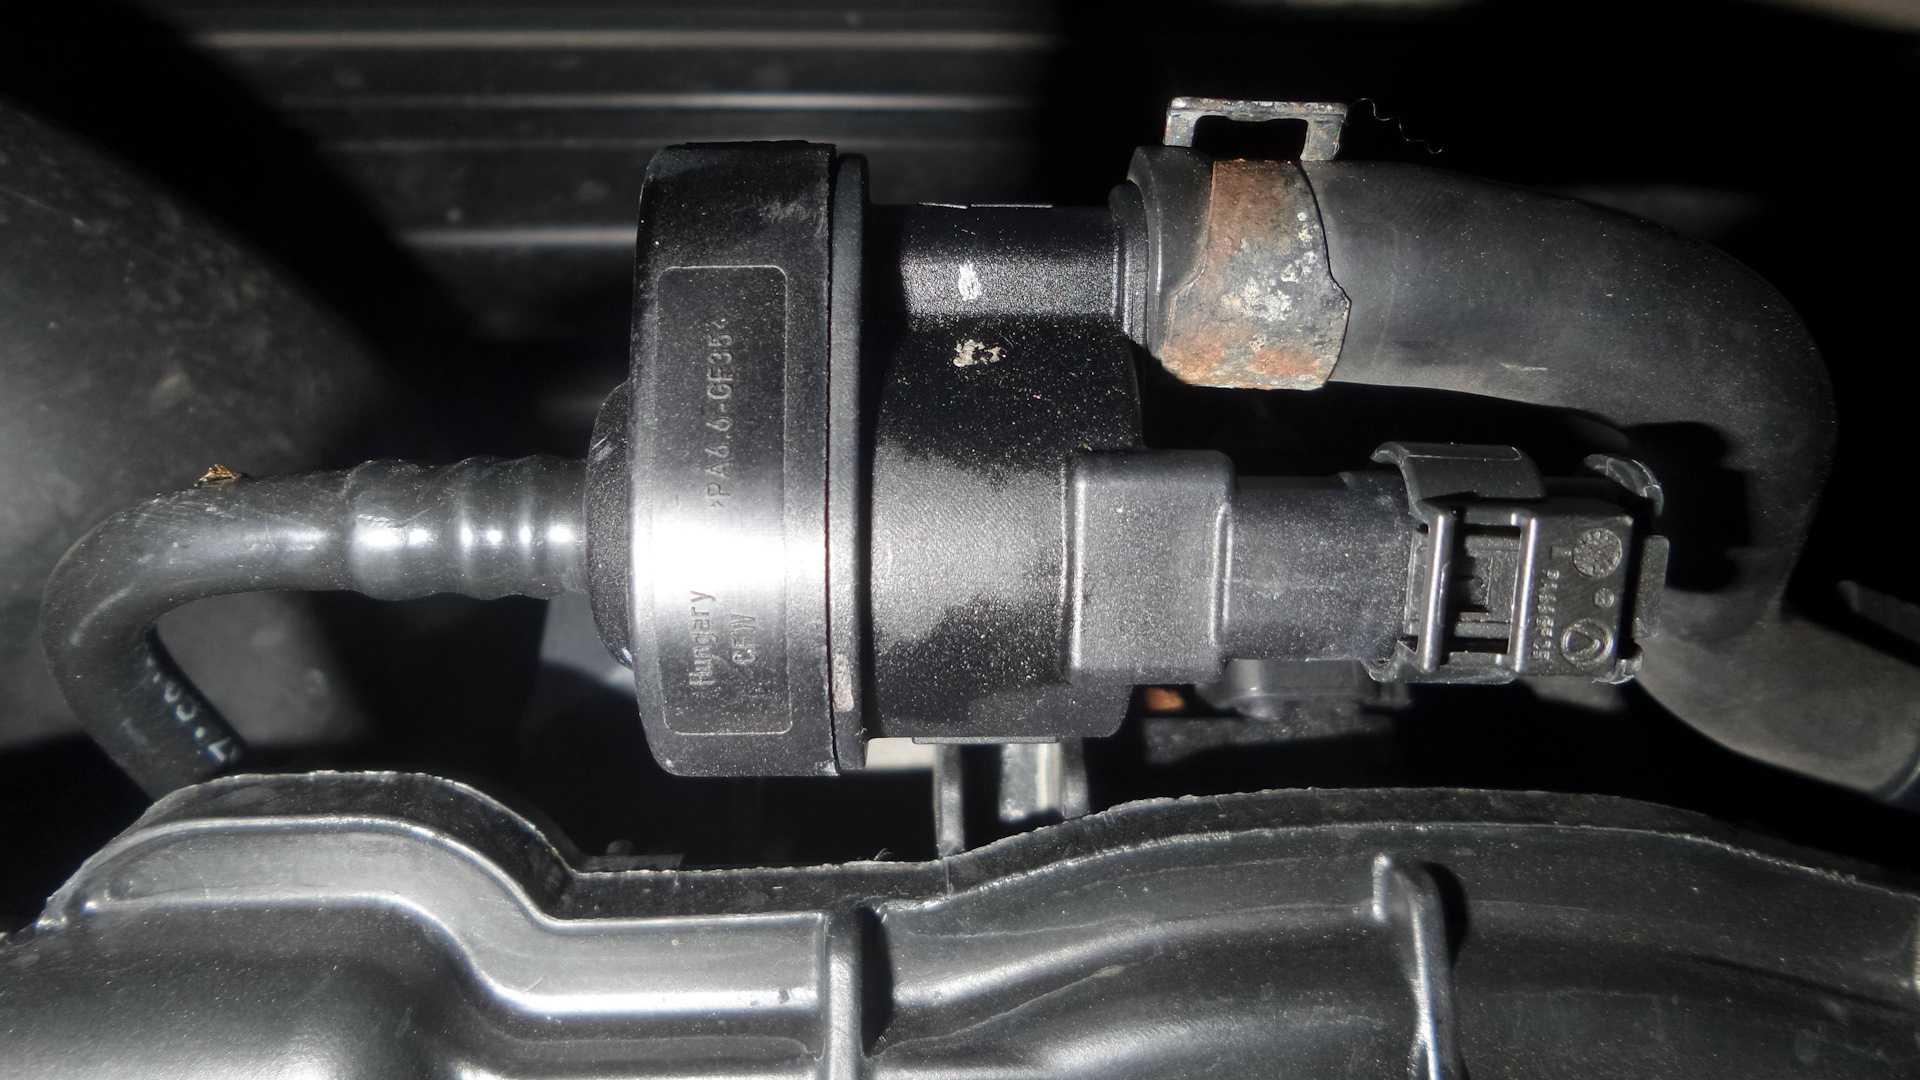 Ошибка p0443 указывает на неисправность цепи клапана системы улавливания паров бензина Причиной такого ответа системы может быть: обрыв проводки, грязный клапан или